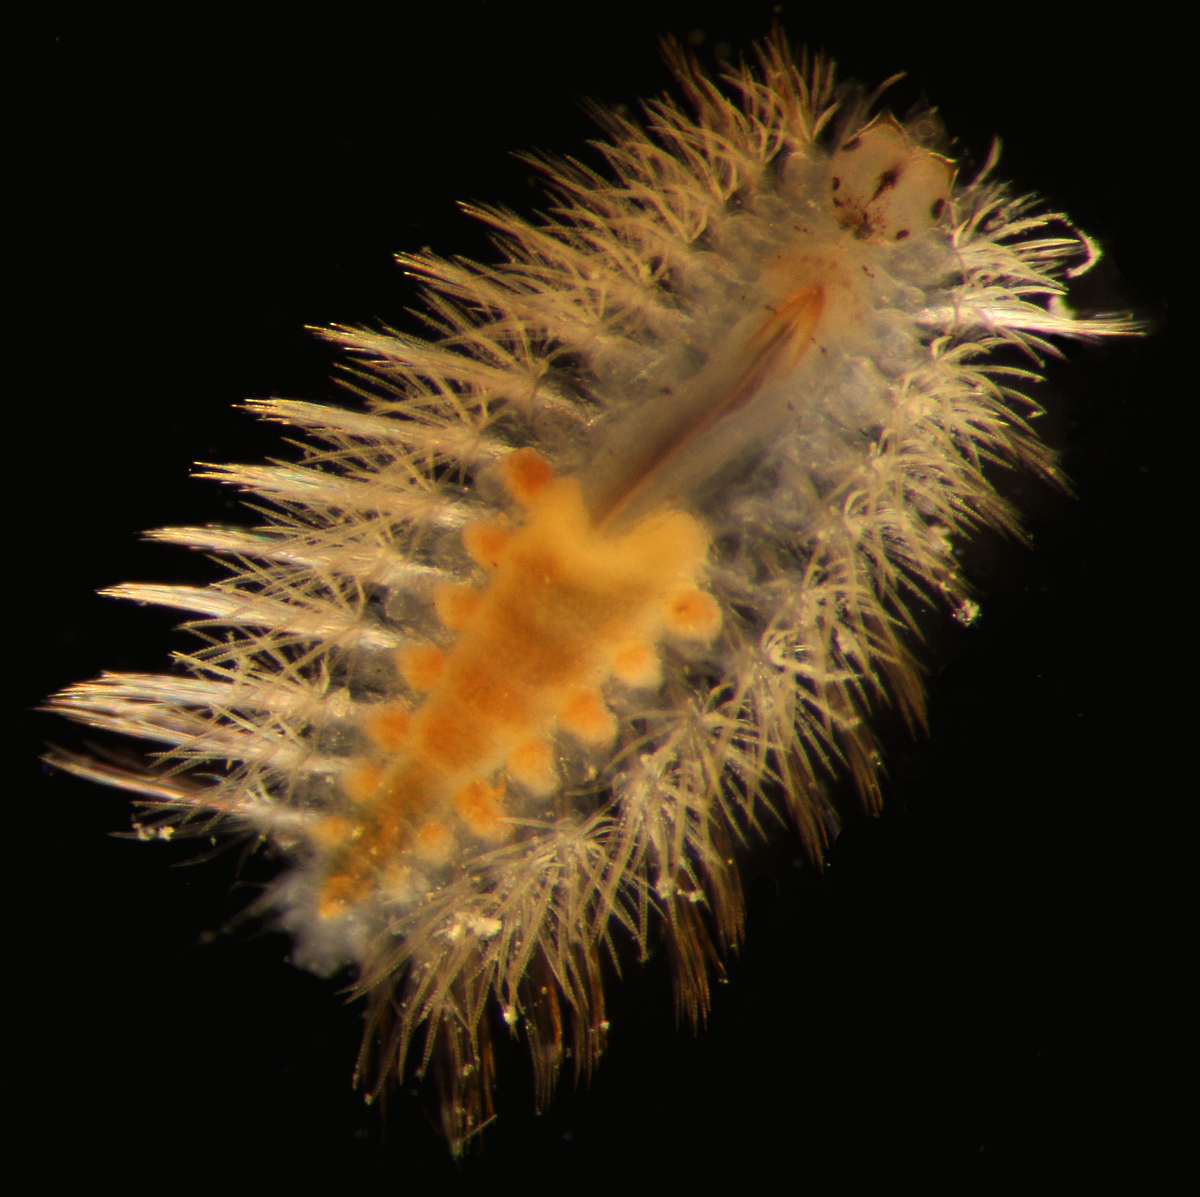 A 2mm syllid (polycheate worm)